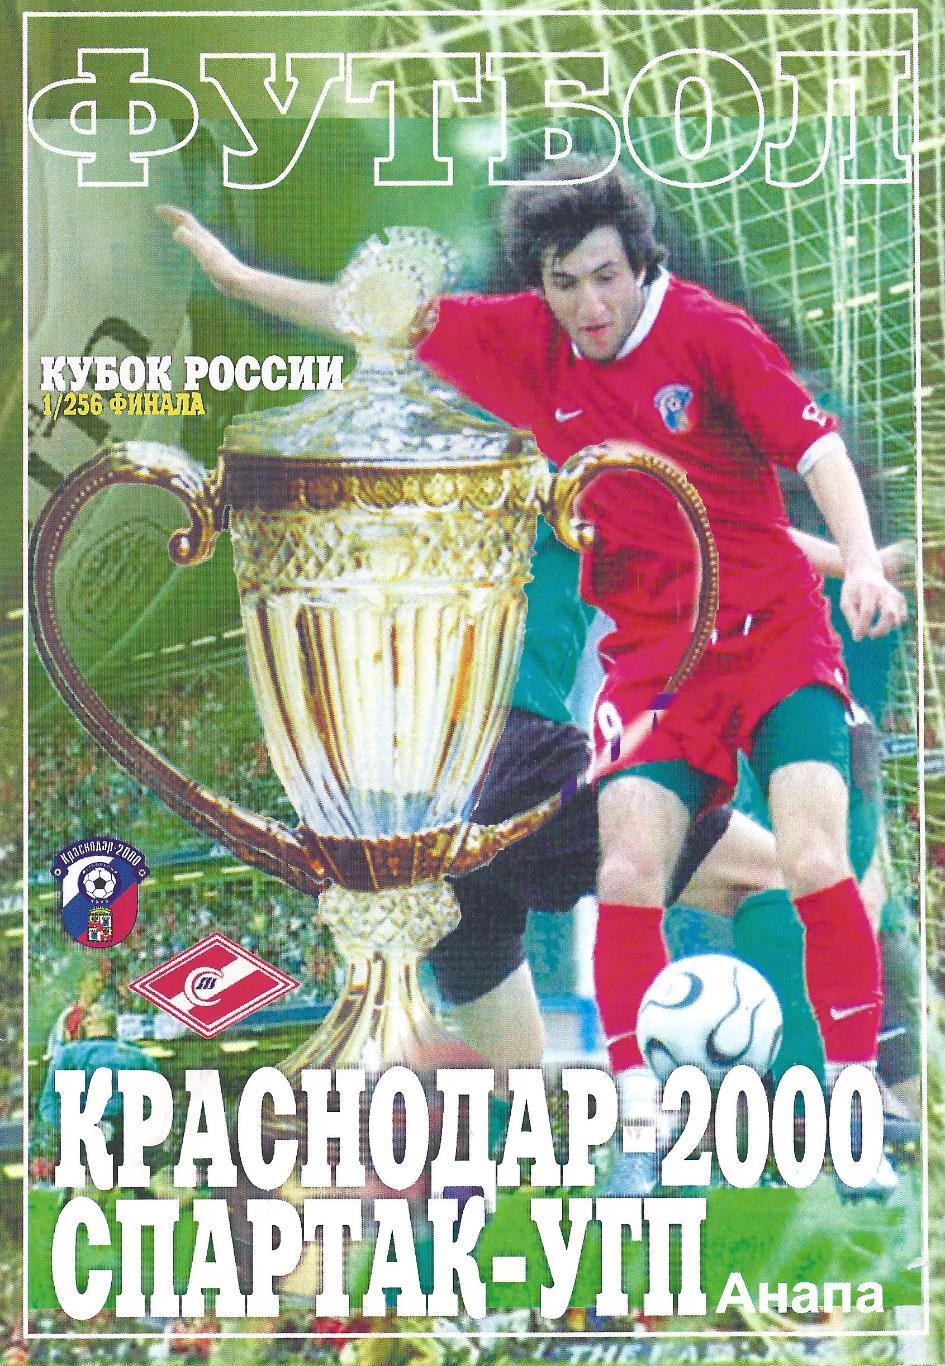 Кубок России 2008-2009: ФК Краснодар-2000 - Спартак-УГП Анапа